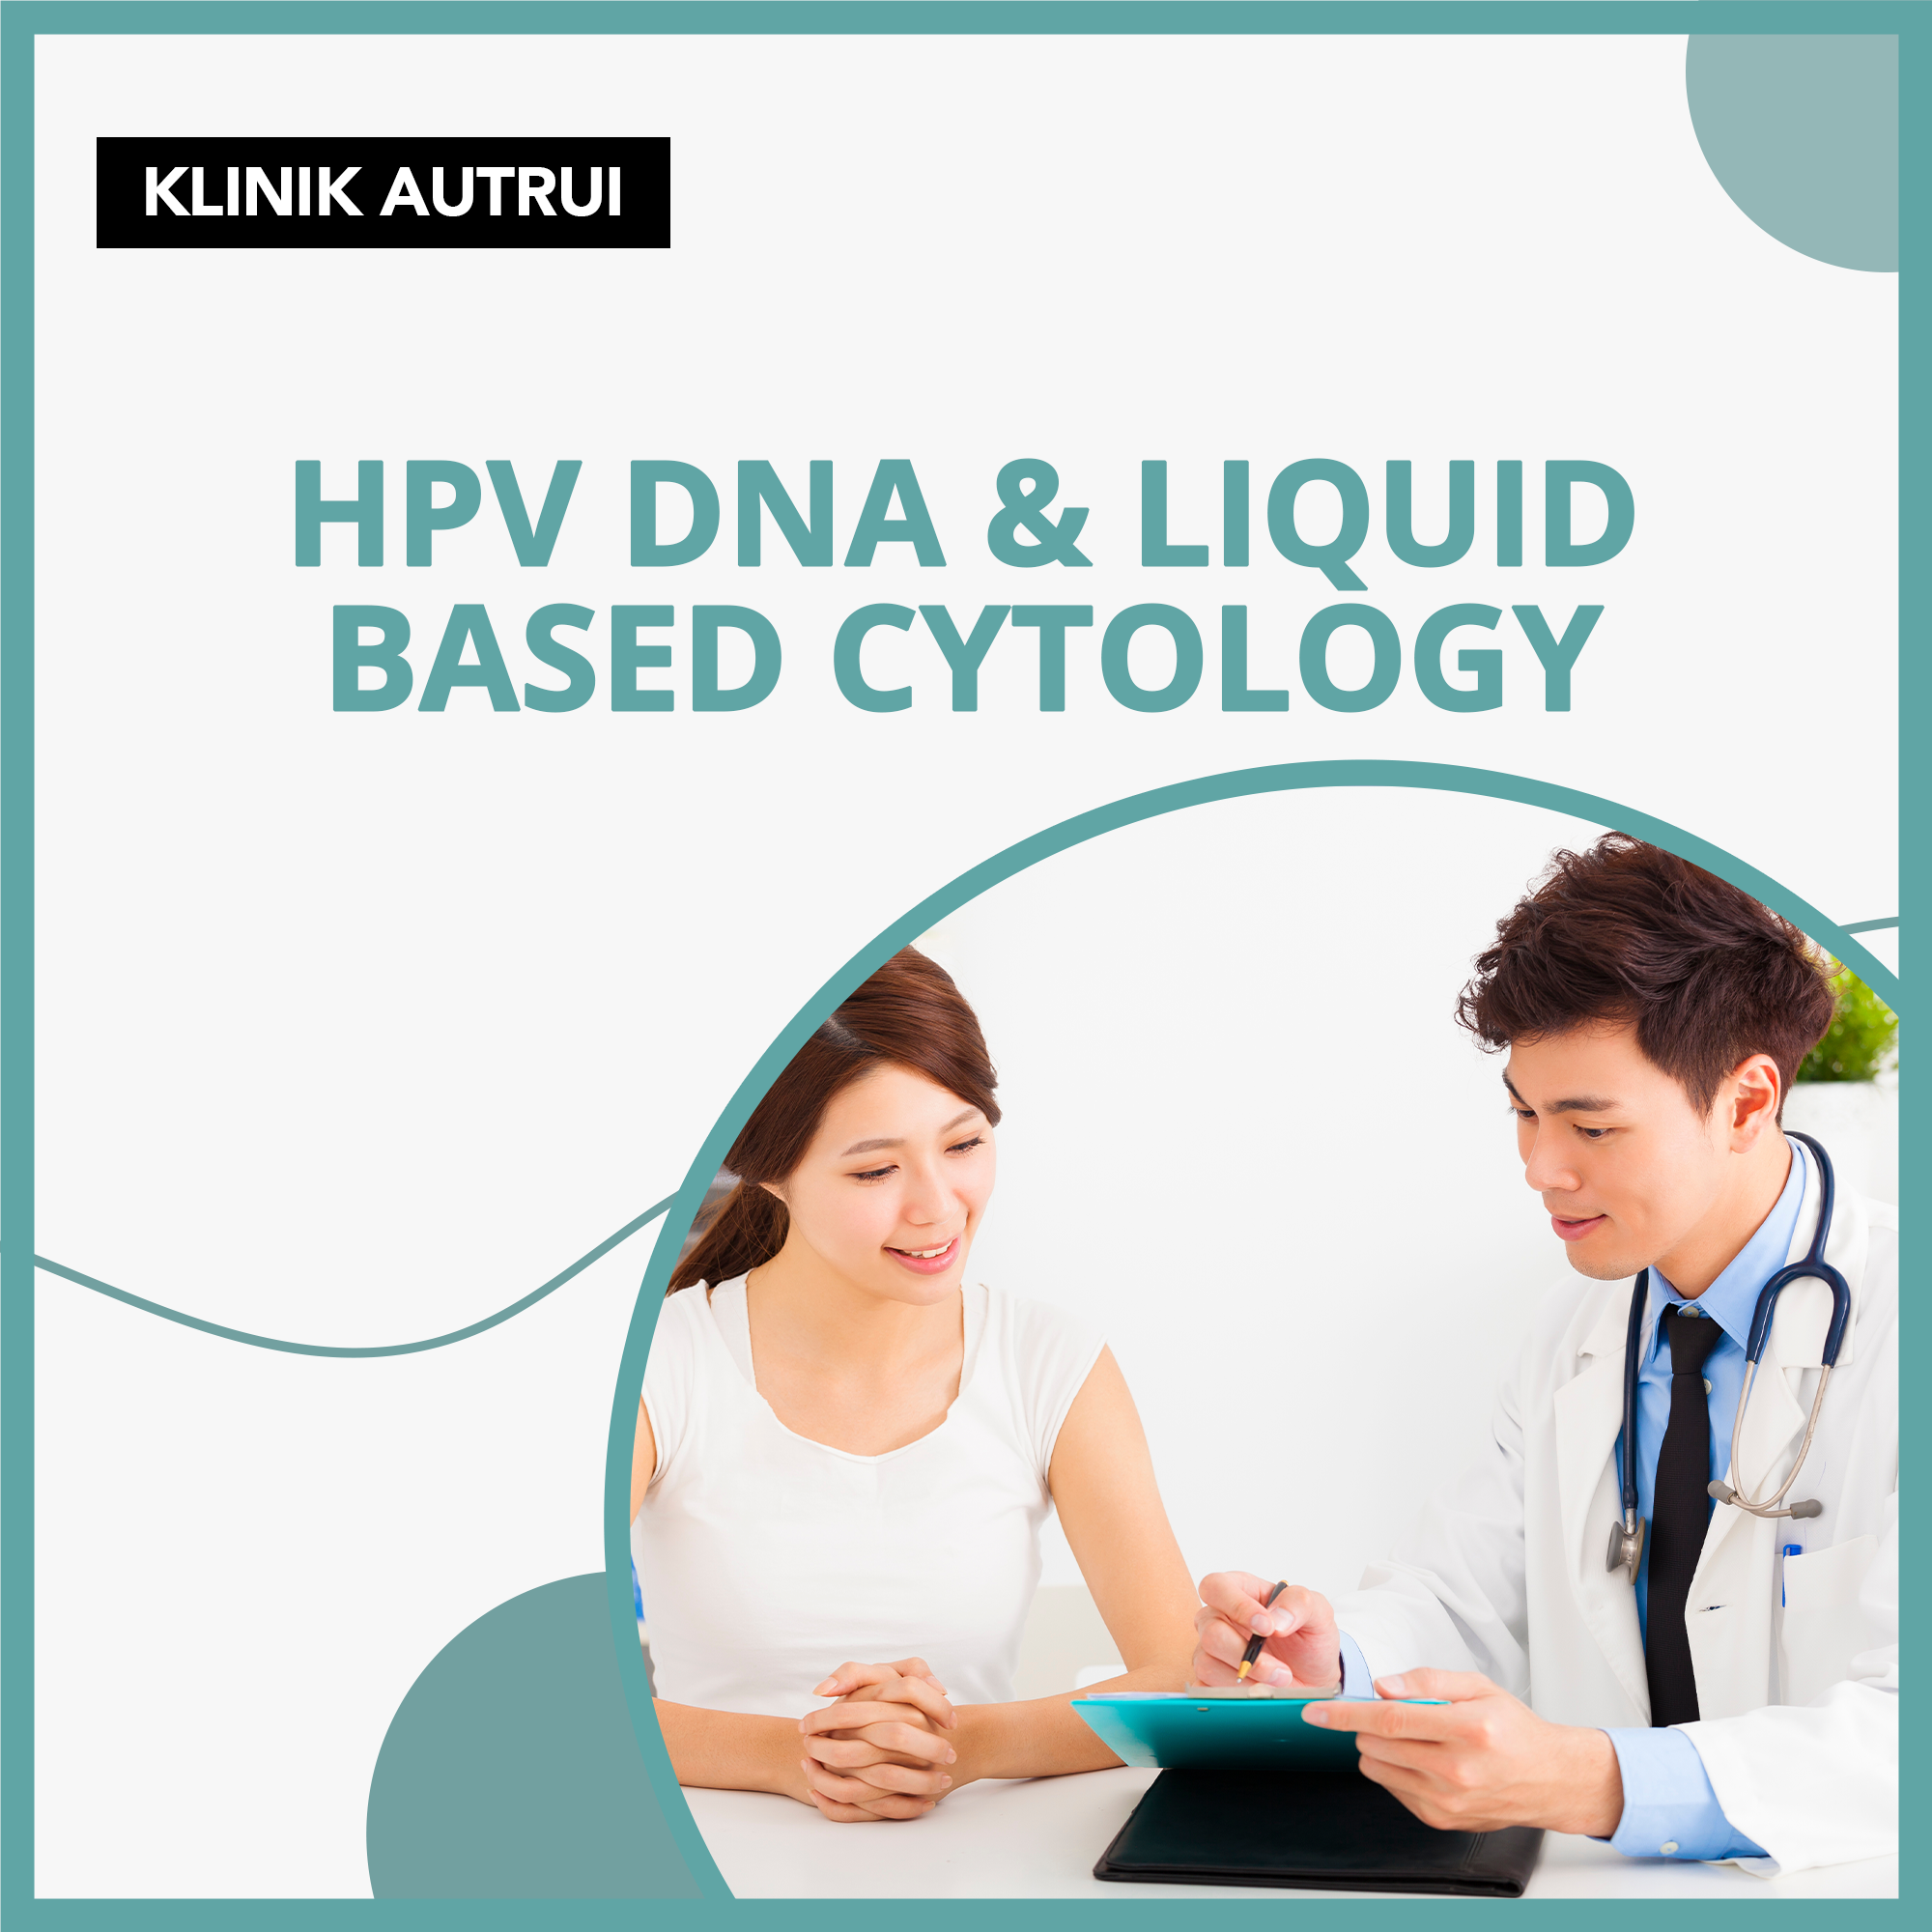 Dapatkan Klinik Kecheerian Subang Jaya Hpv Dna And Liquid Based Cytology Pap Smear Dengan Mudah 